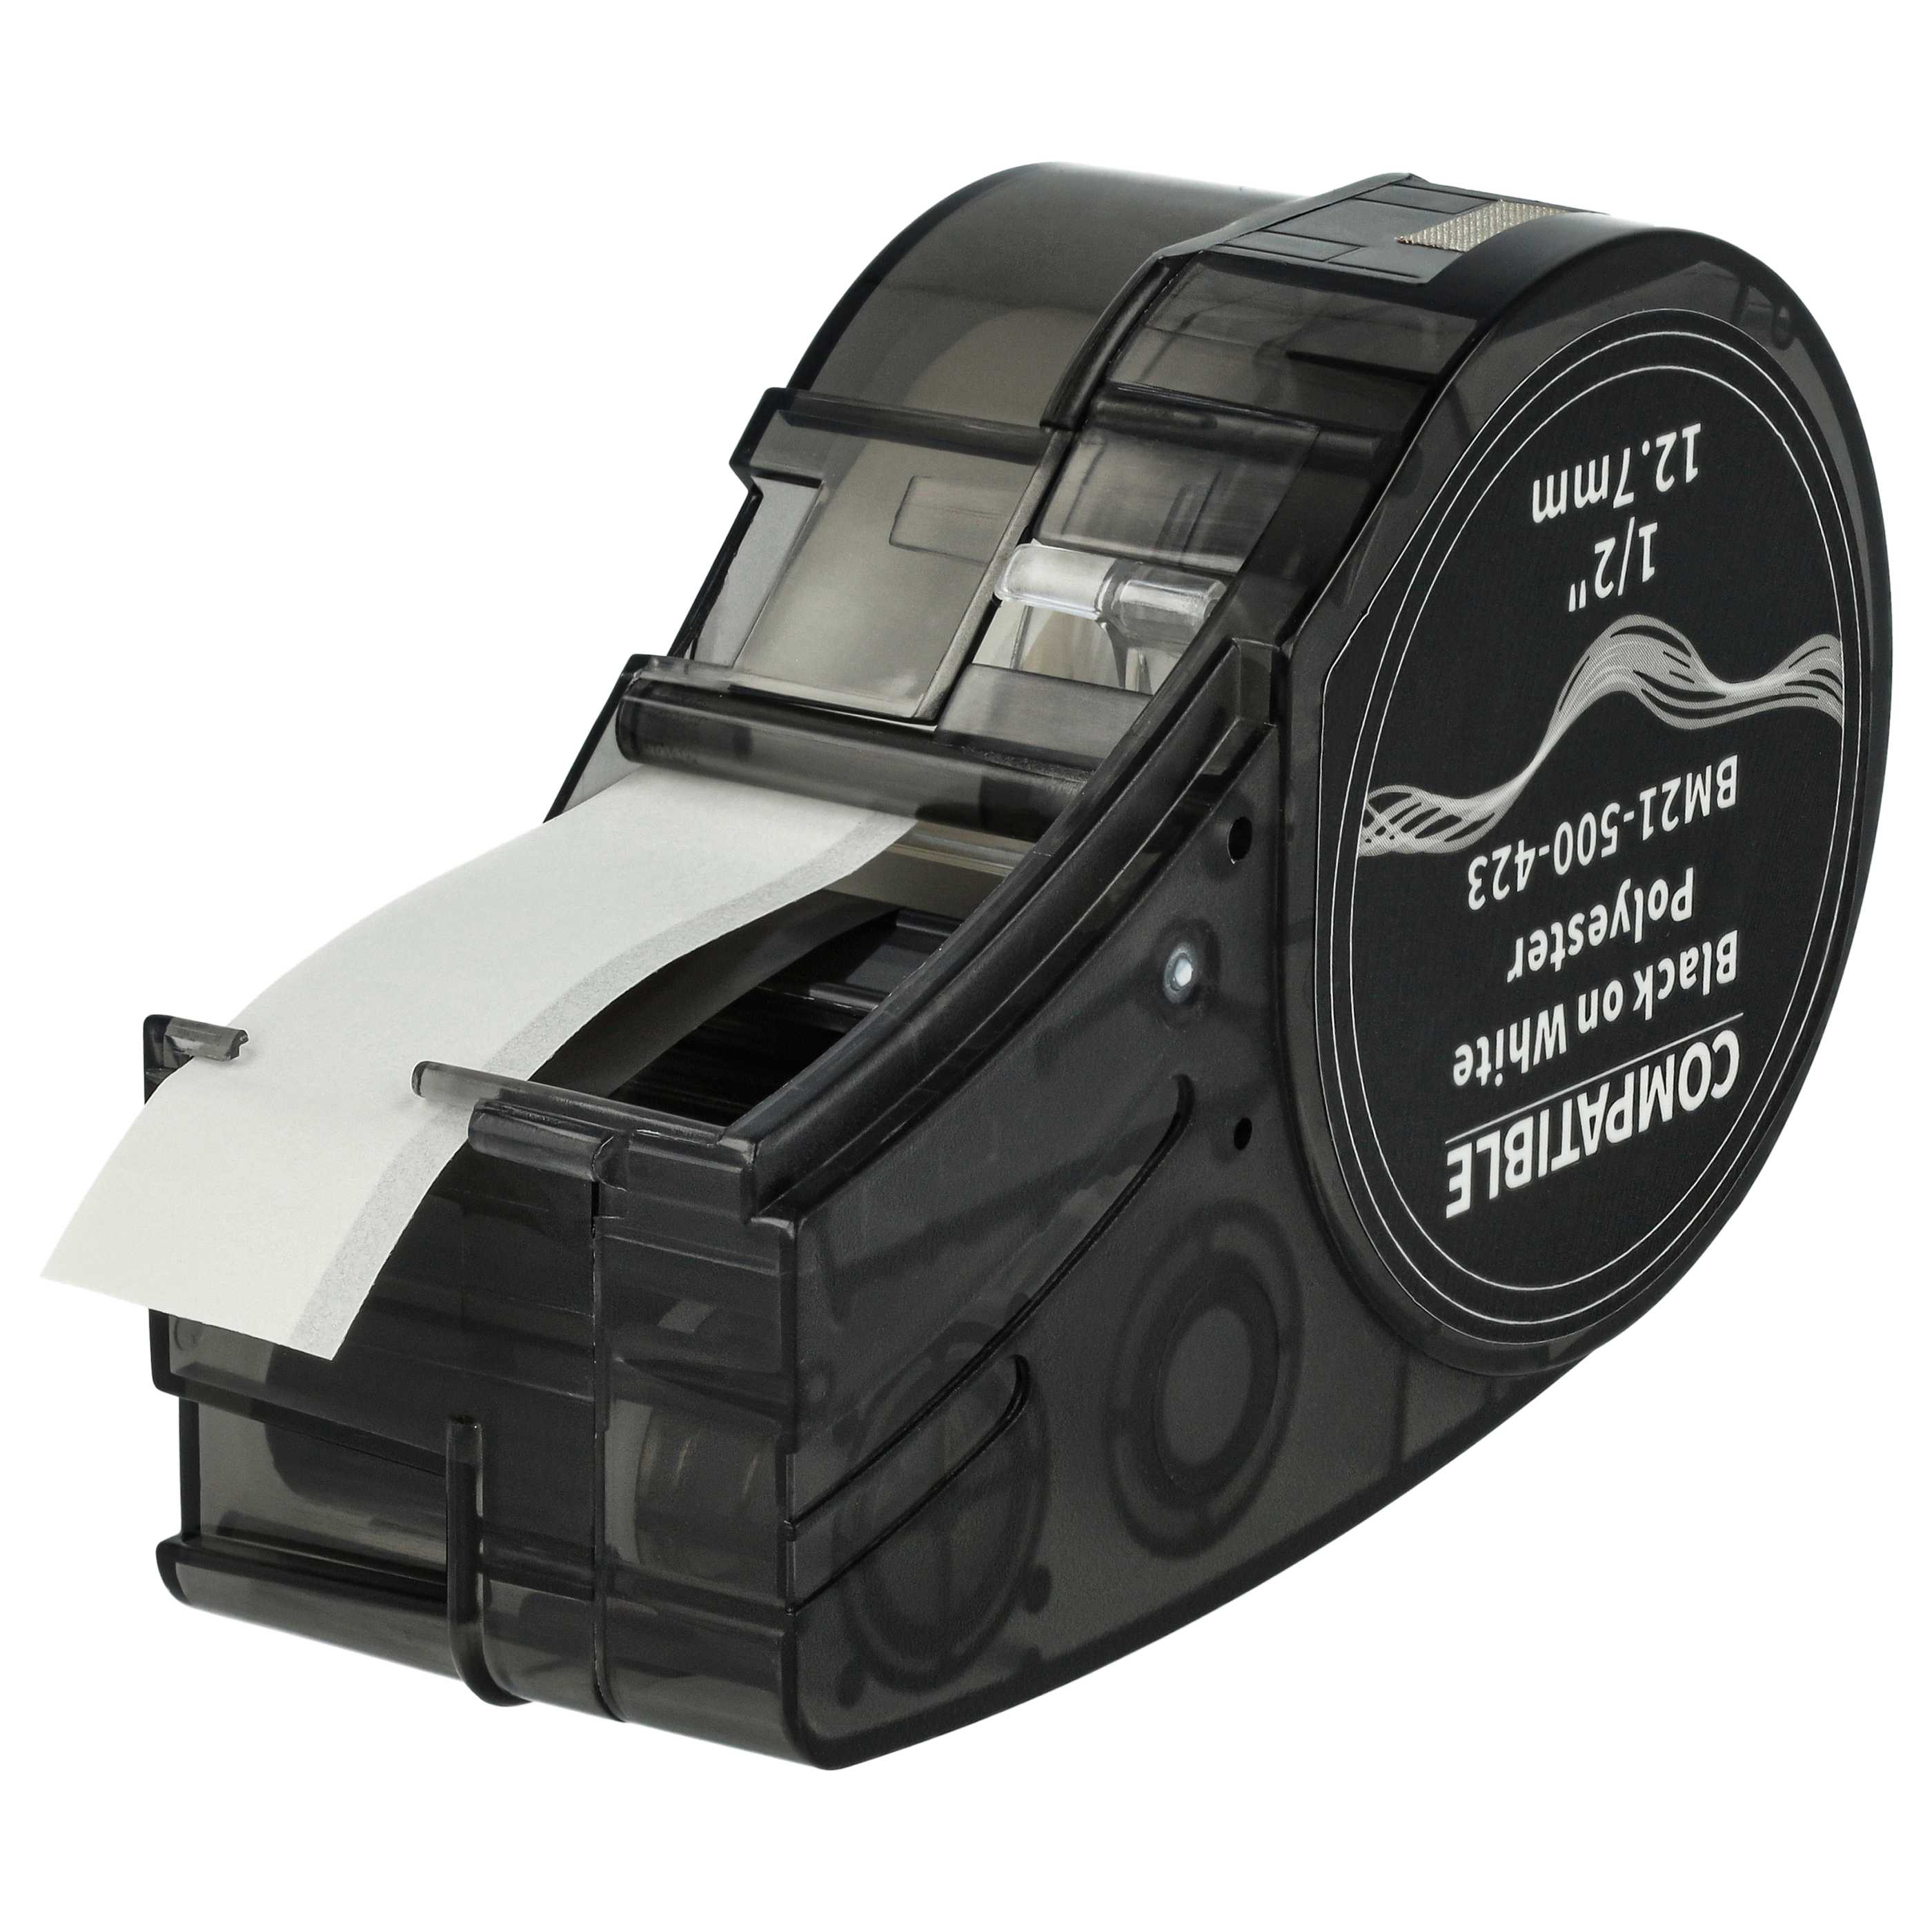 Cassetta nastro sostituisce Brady M21-500-423 per etichettatrice Brady 12,7mm nero su bianco, poliestere